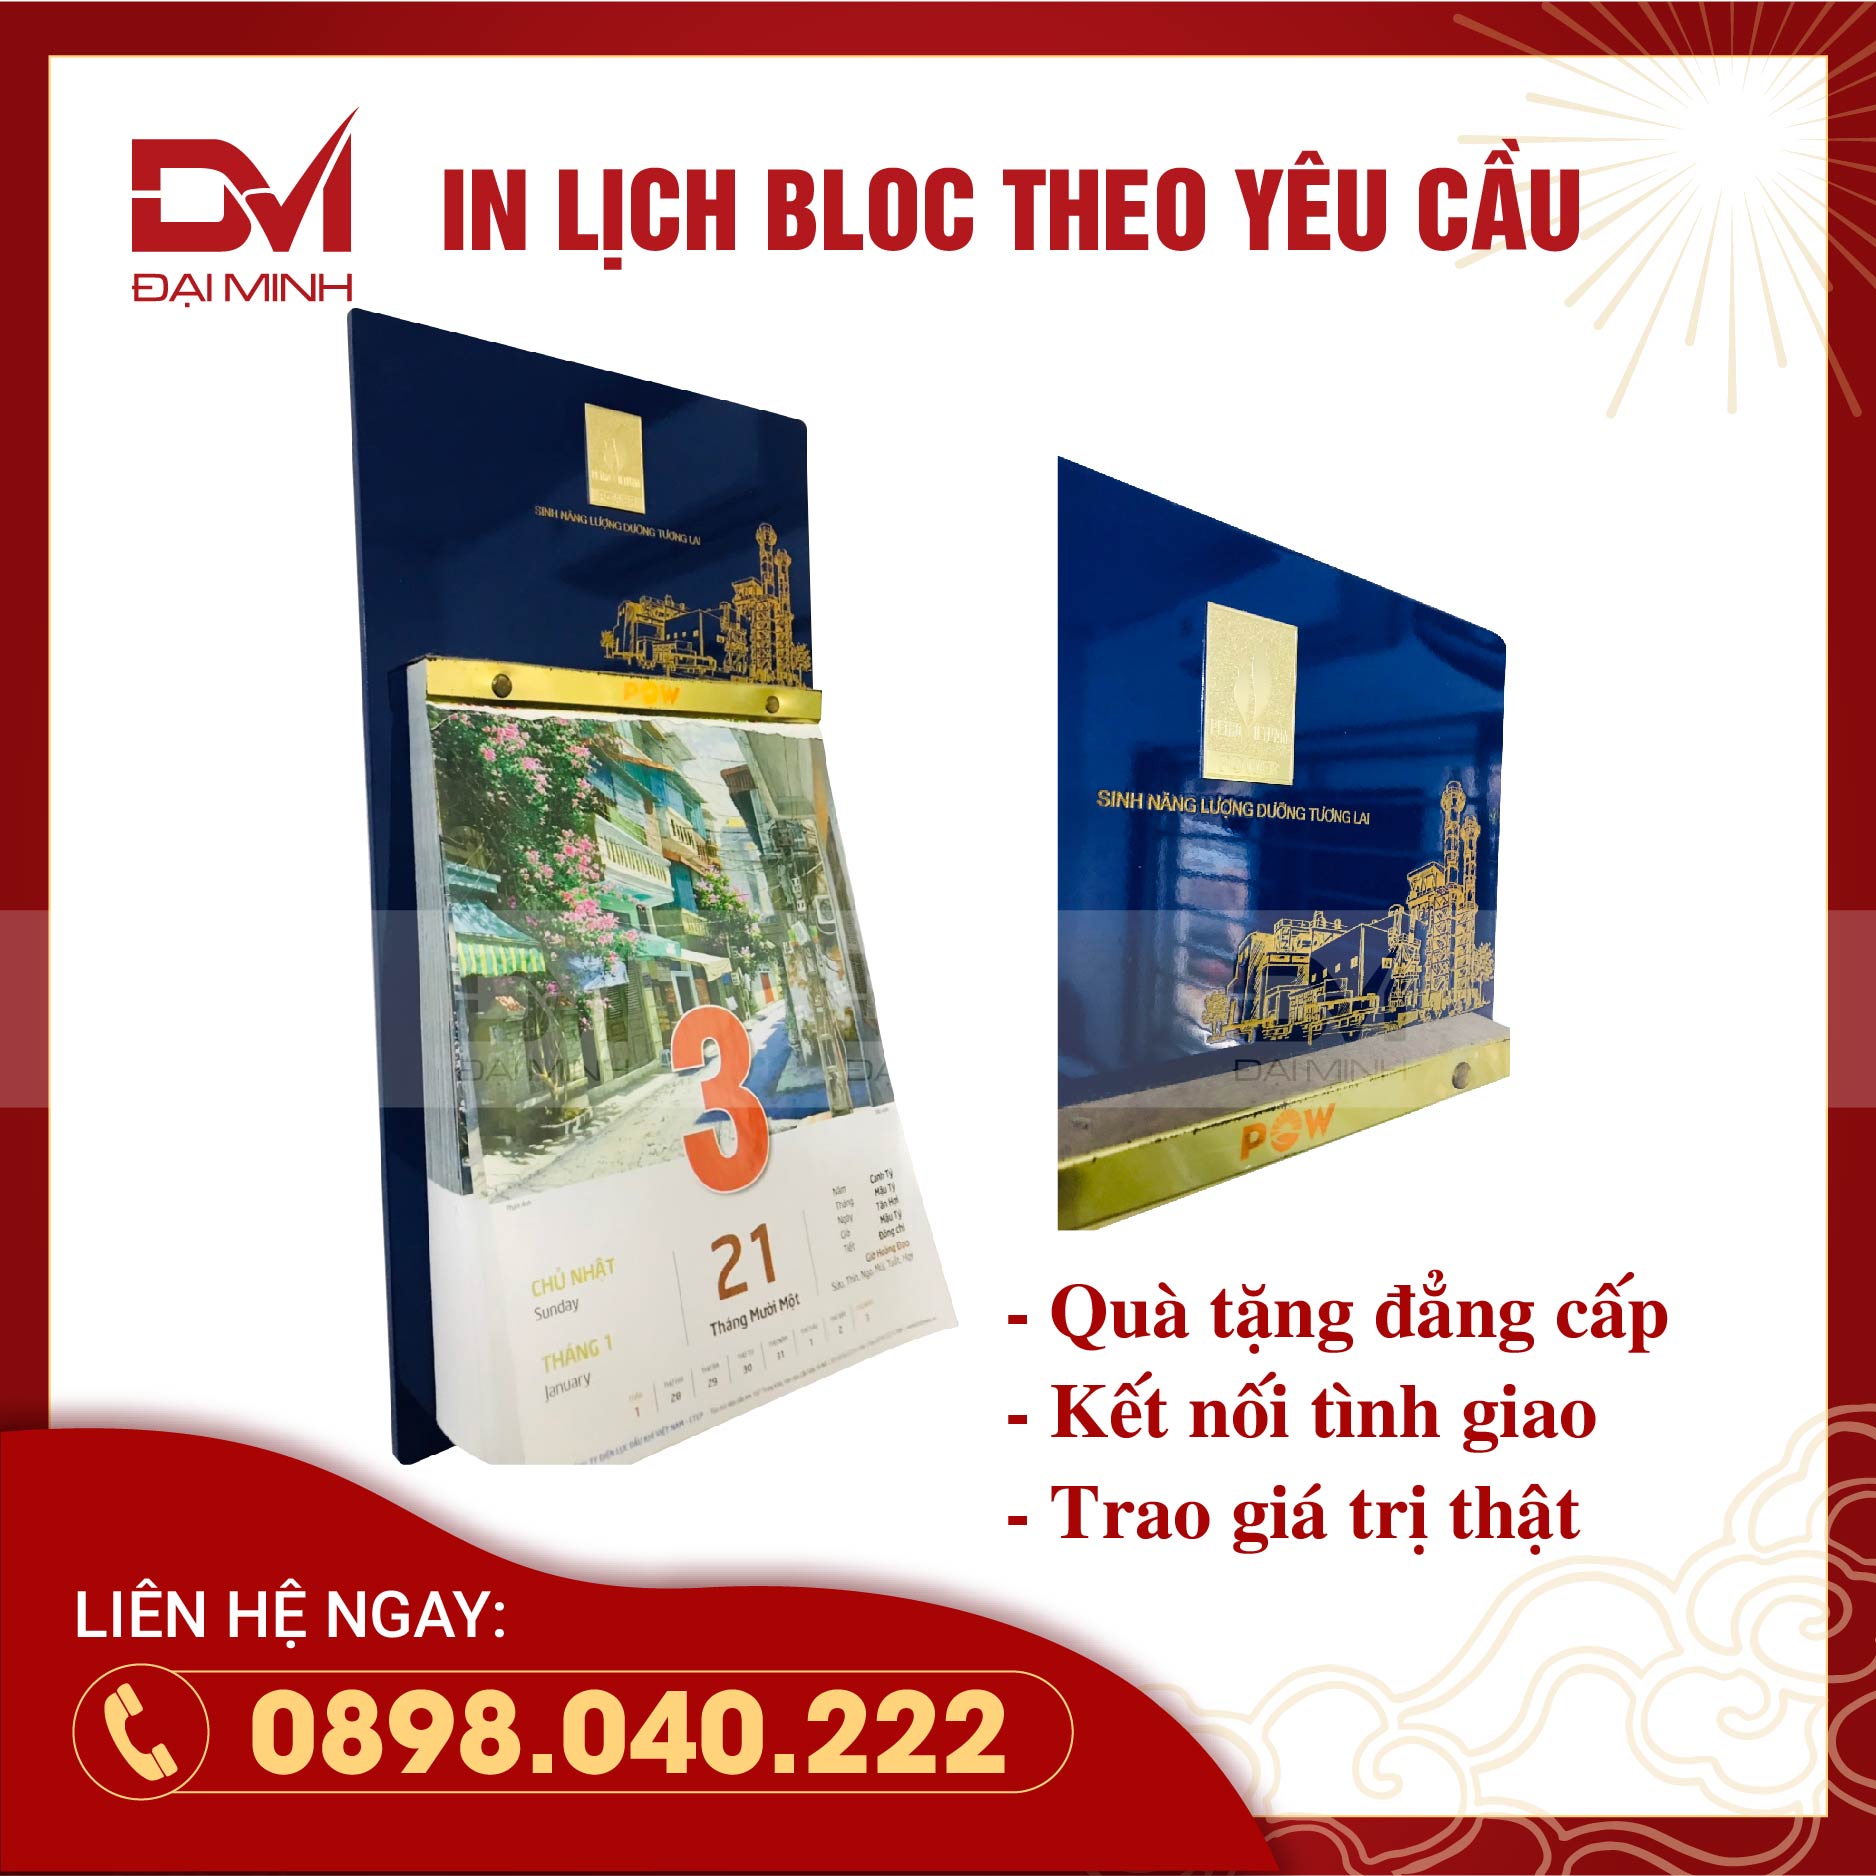 Lich Bloc in theo yêu cầu - Petro Việt Nam